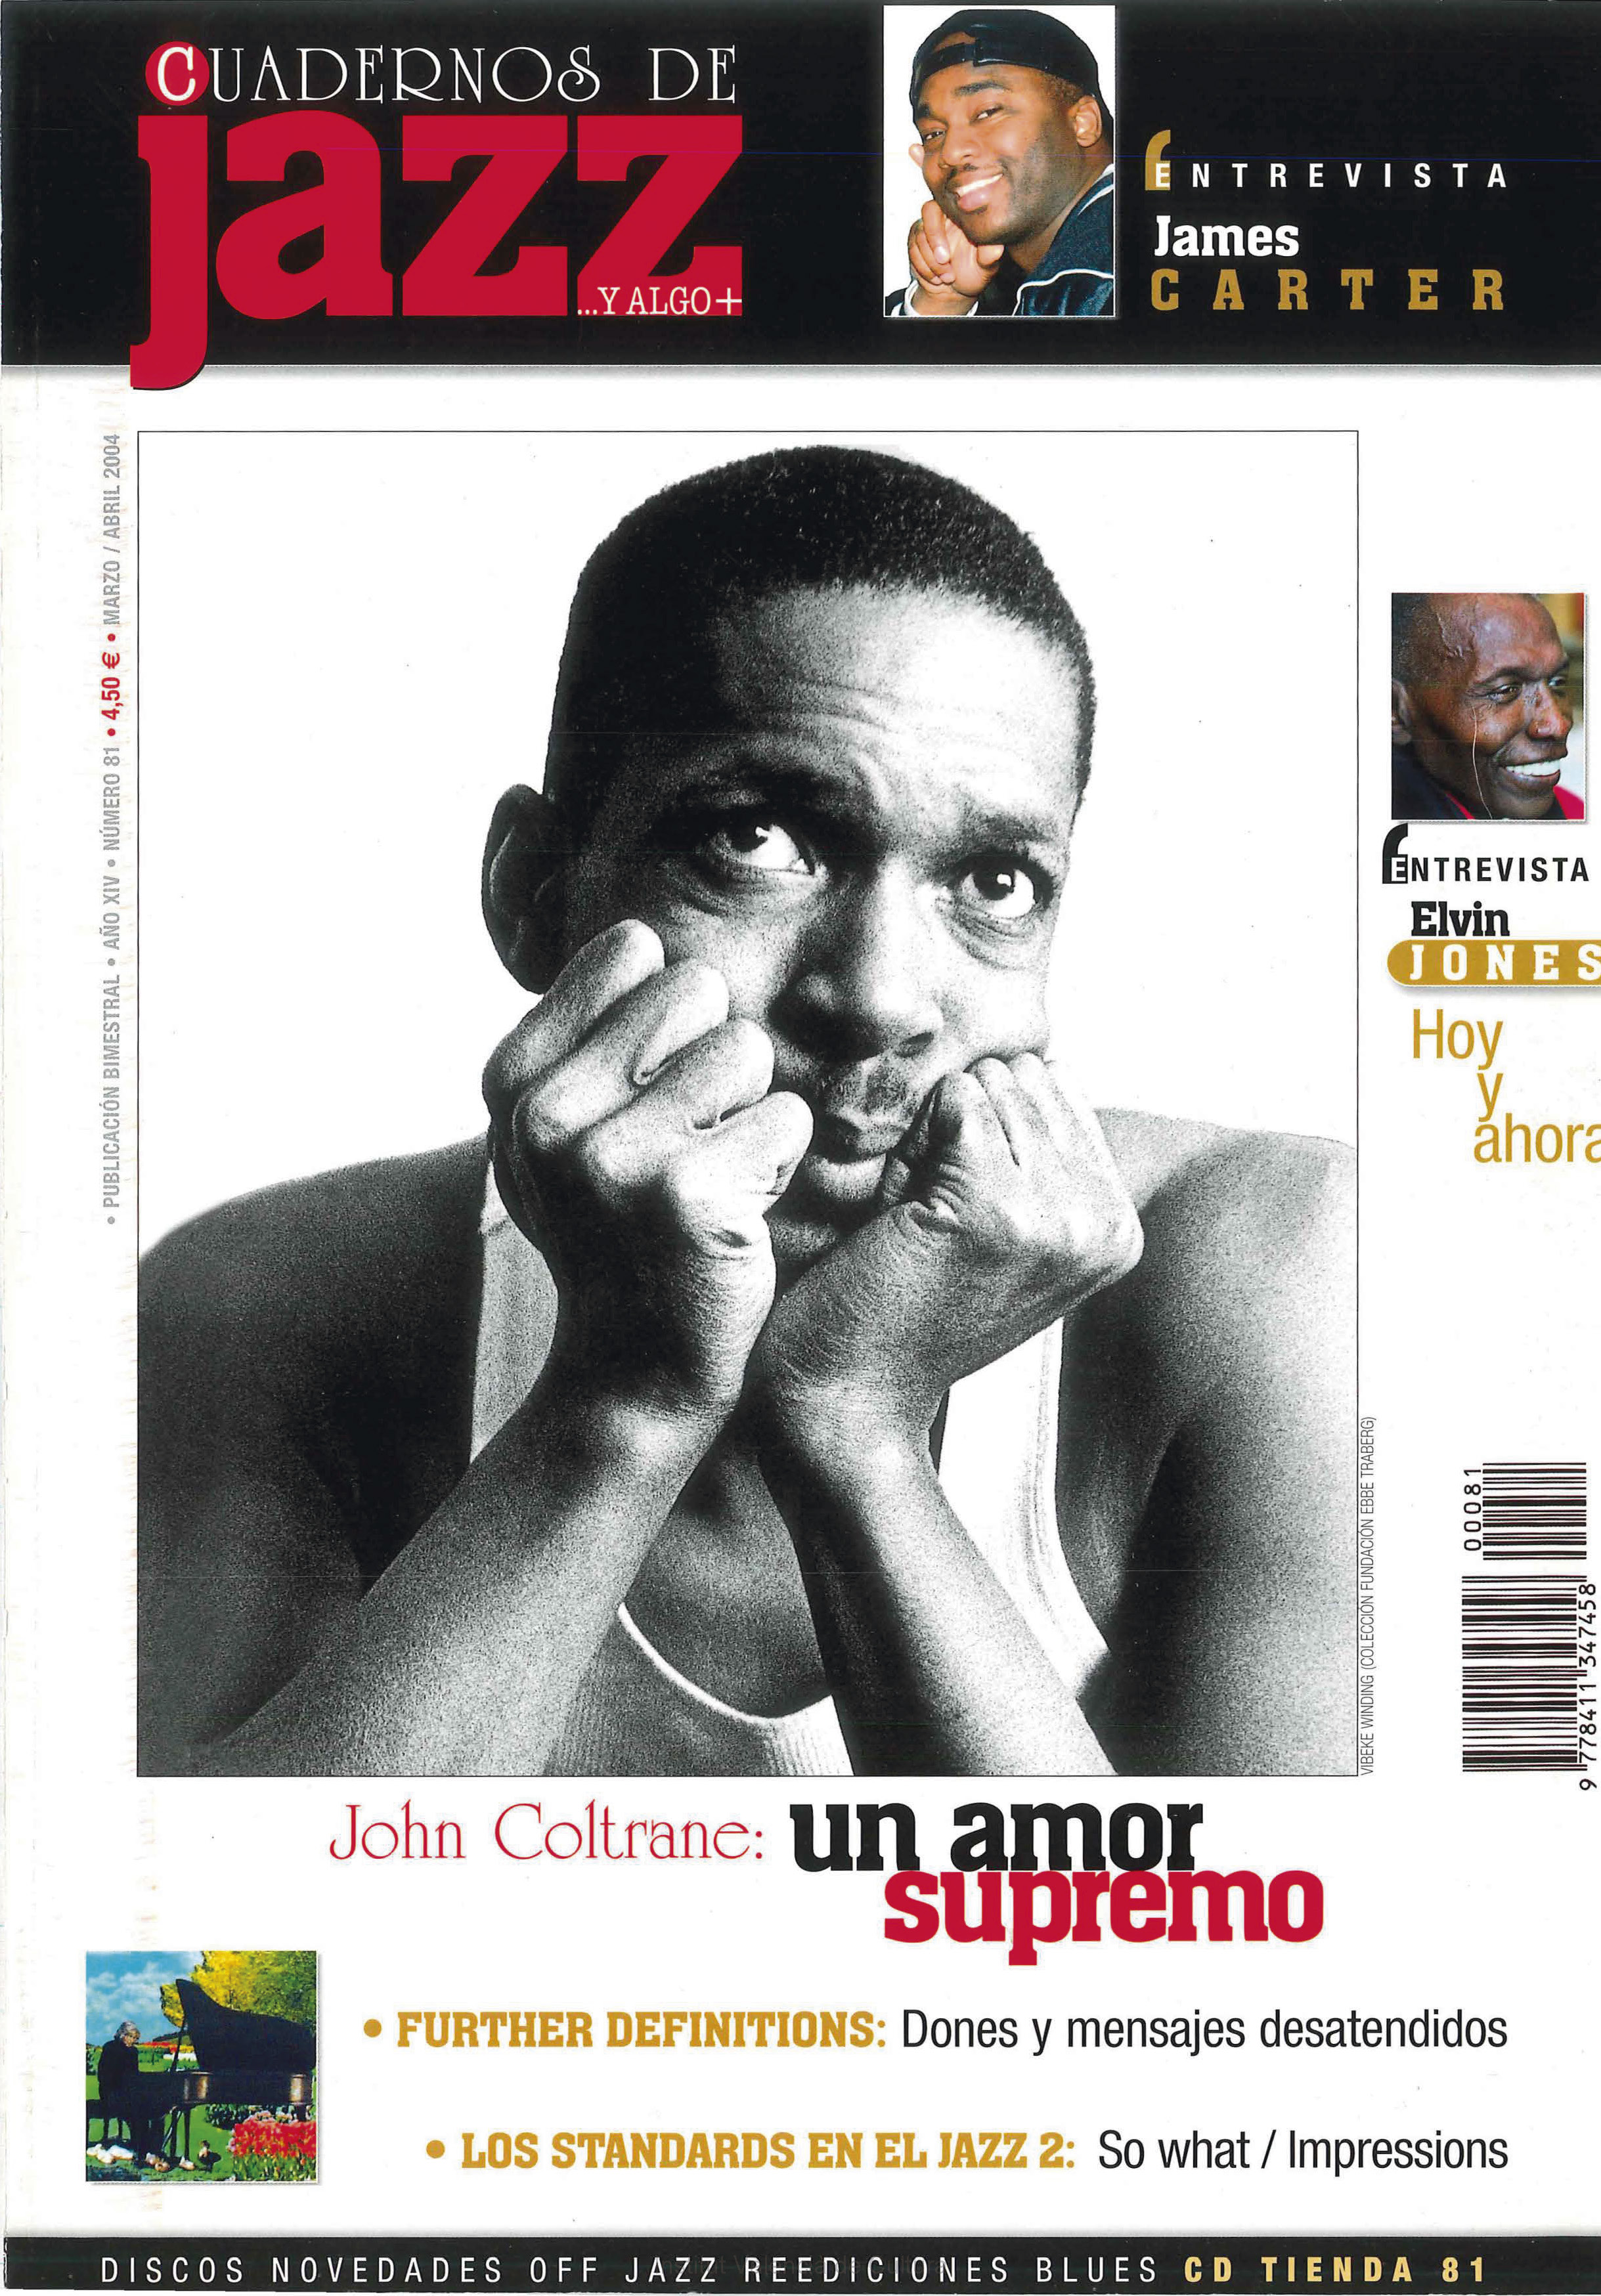 Cubierta del número 81 de la revista Cuadernos de Jazz